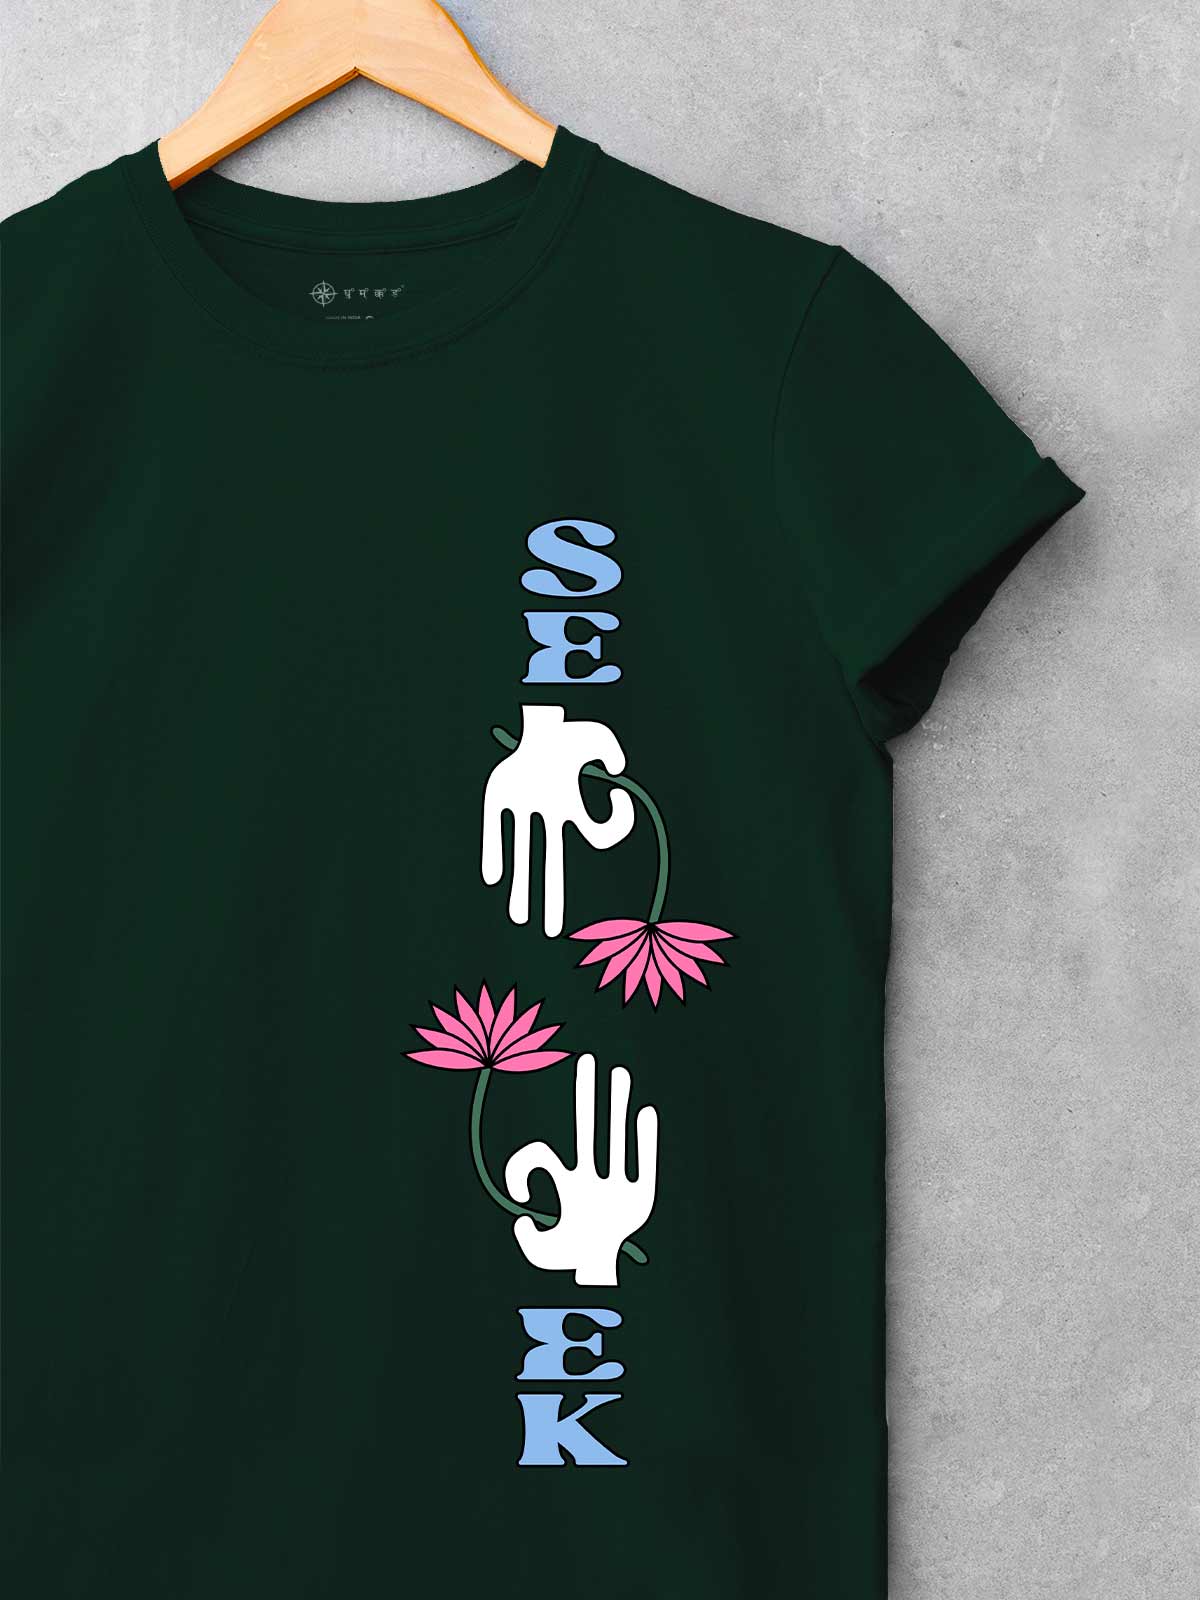 Seek-printed-t-shirt-for-men by Ghumakkad